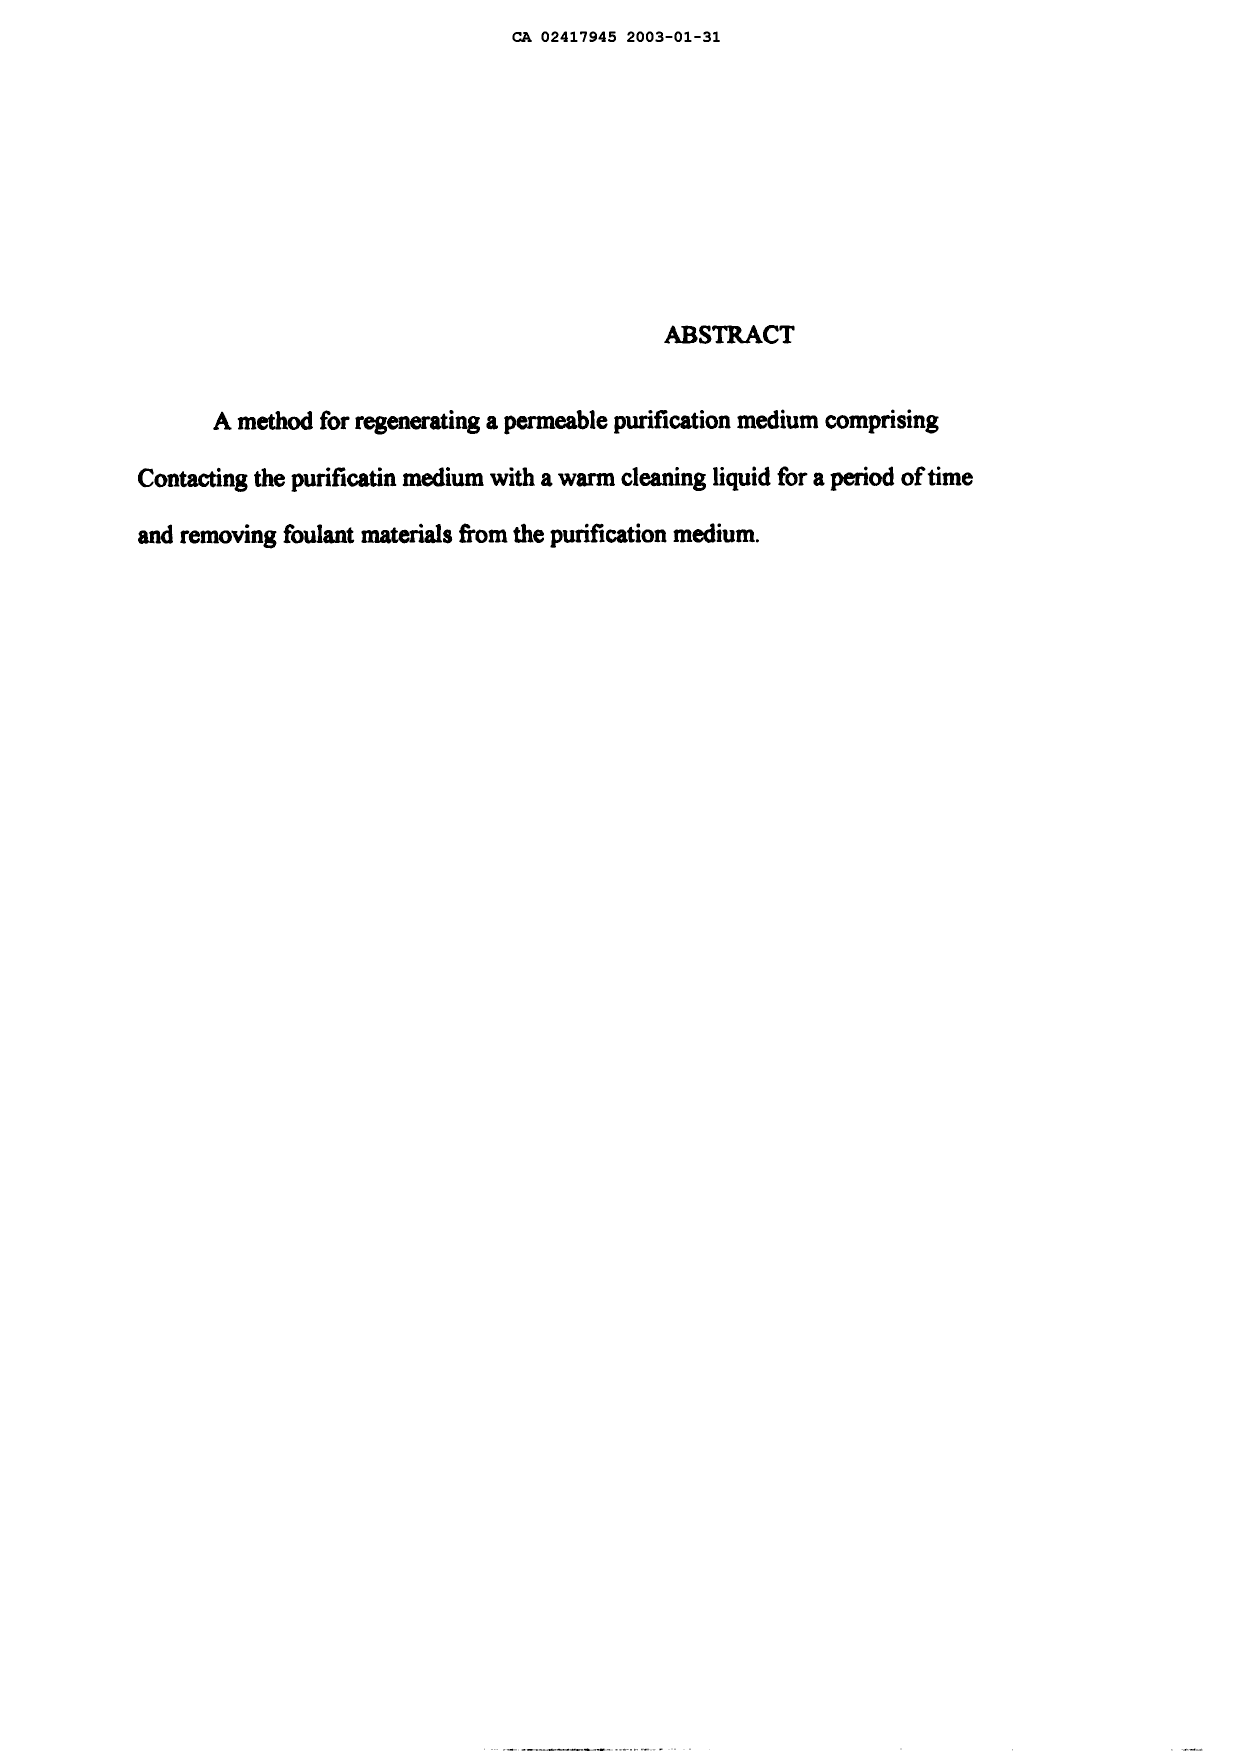 Document de brevet canadien 2417945. Abrégé 20021231. Image 1 de 1